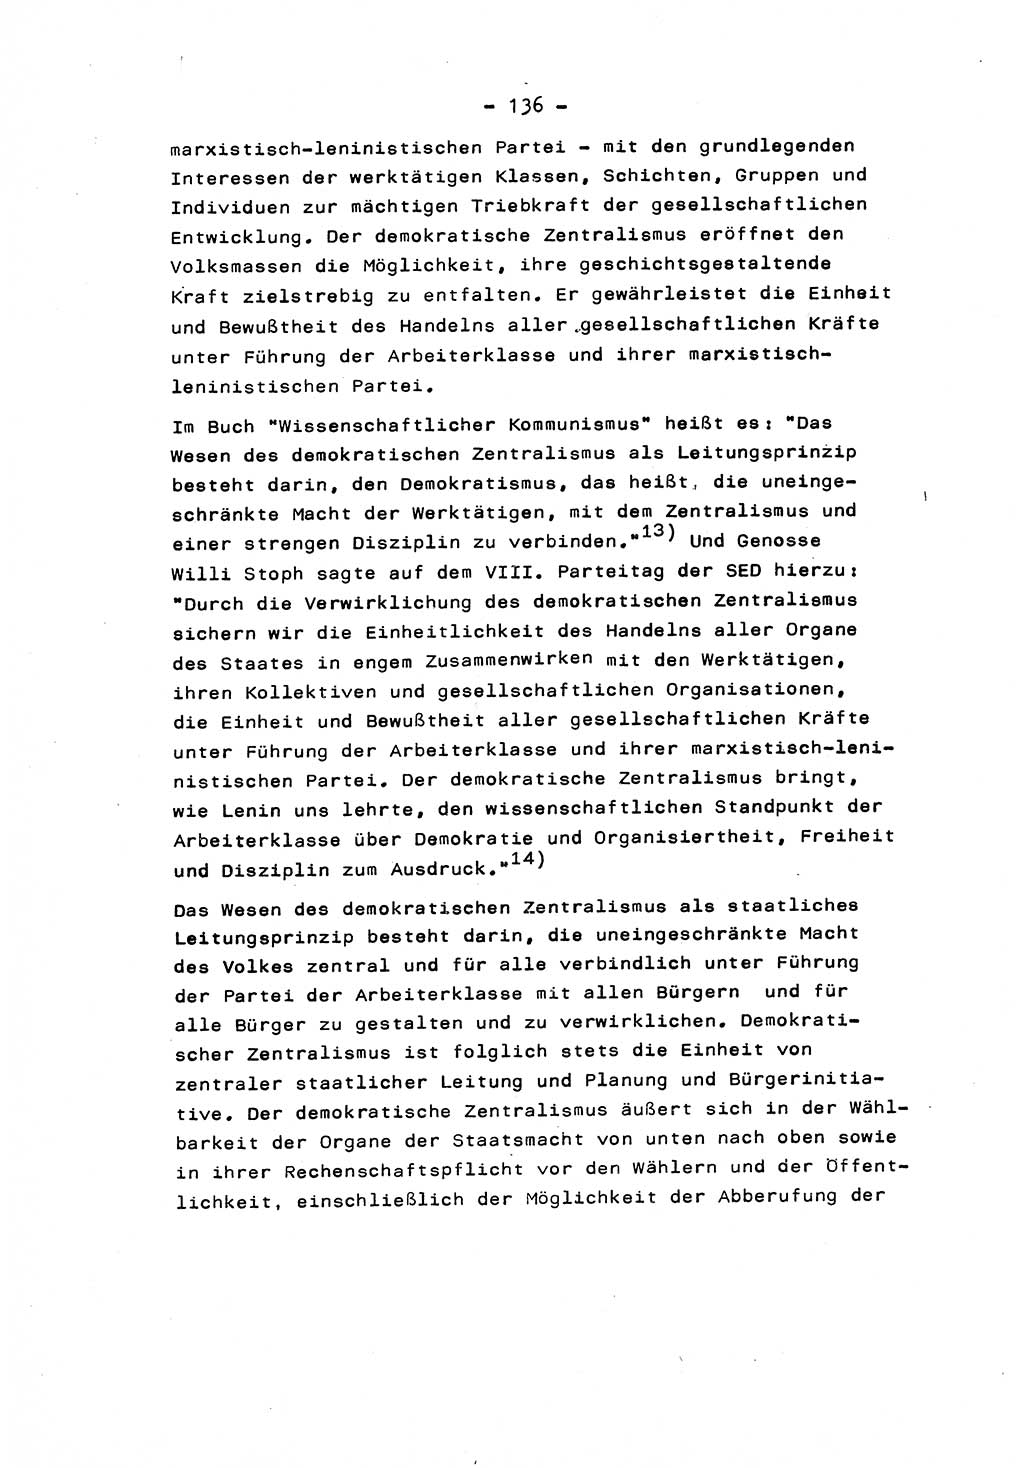 Marxistisch-leninistische Staats- und Rechtstheorie [Deutsche Demokratische Republik (DDR)] 1975, Seite 136 (ML St.-R.-Th. DDR 1975, S. 136)